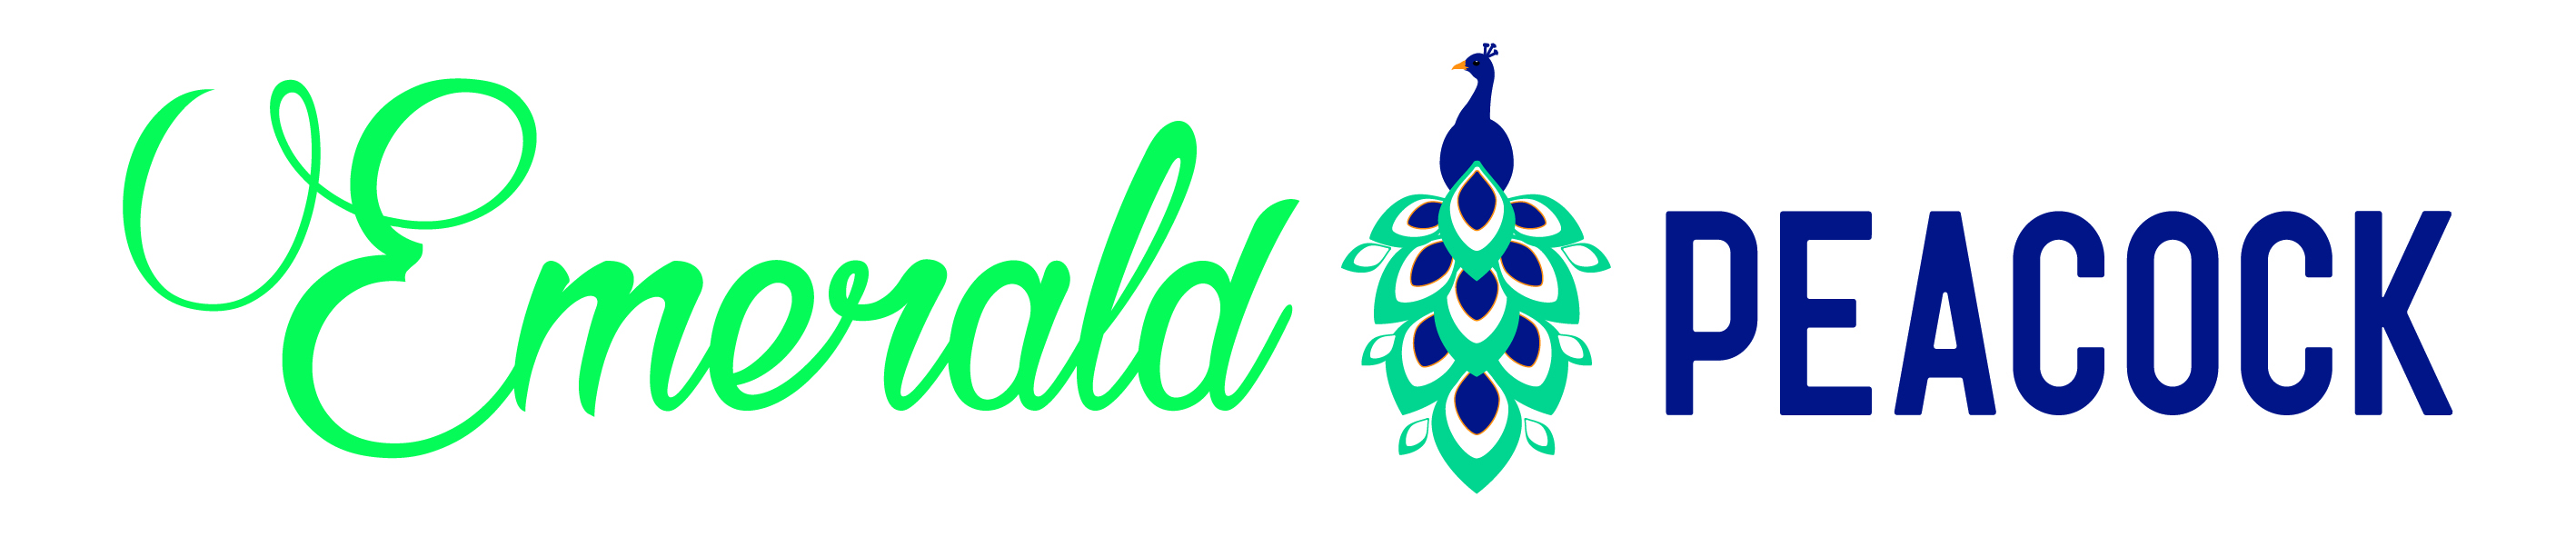 images/shoplogoimages/39260-emeraldpeacock-logo-horizontaal-gecentreerd.jpg